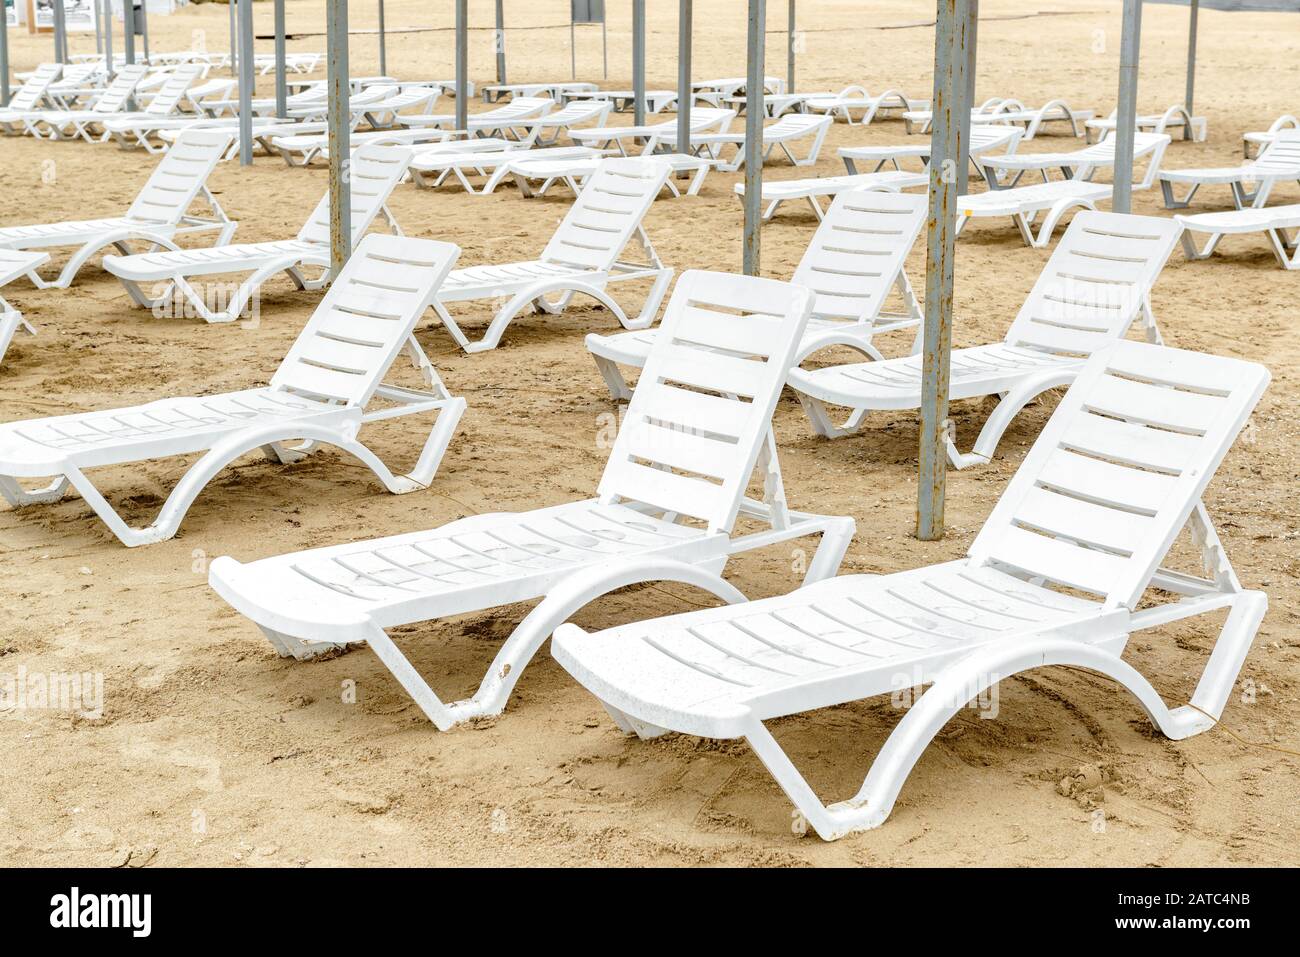 Liegen in der Saison. Viele leerstehende Sonnenliegen an einem sandigen Strand. Panorama von vielen weißen Sonnenliegen aus Kunststoff am Meeresufer. Desertierte Ferienanlage bea Stockfoto